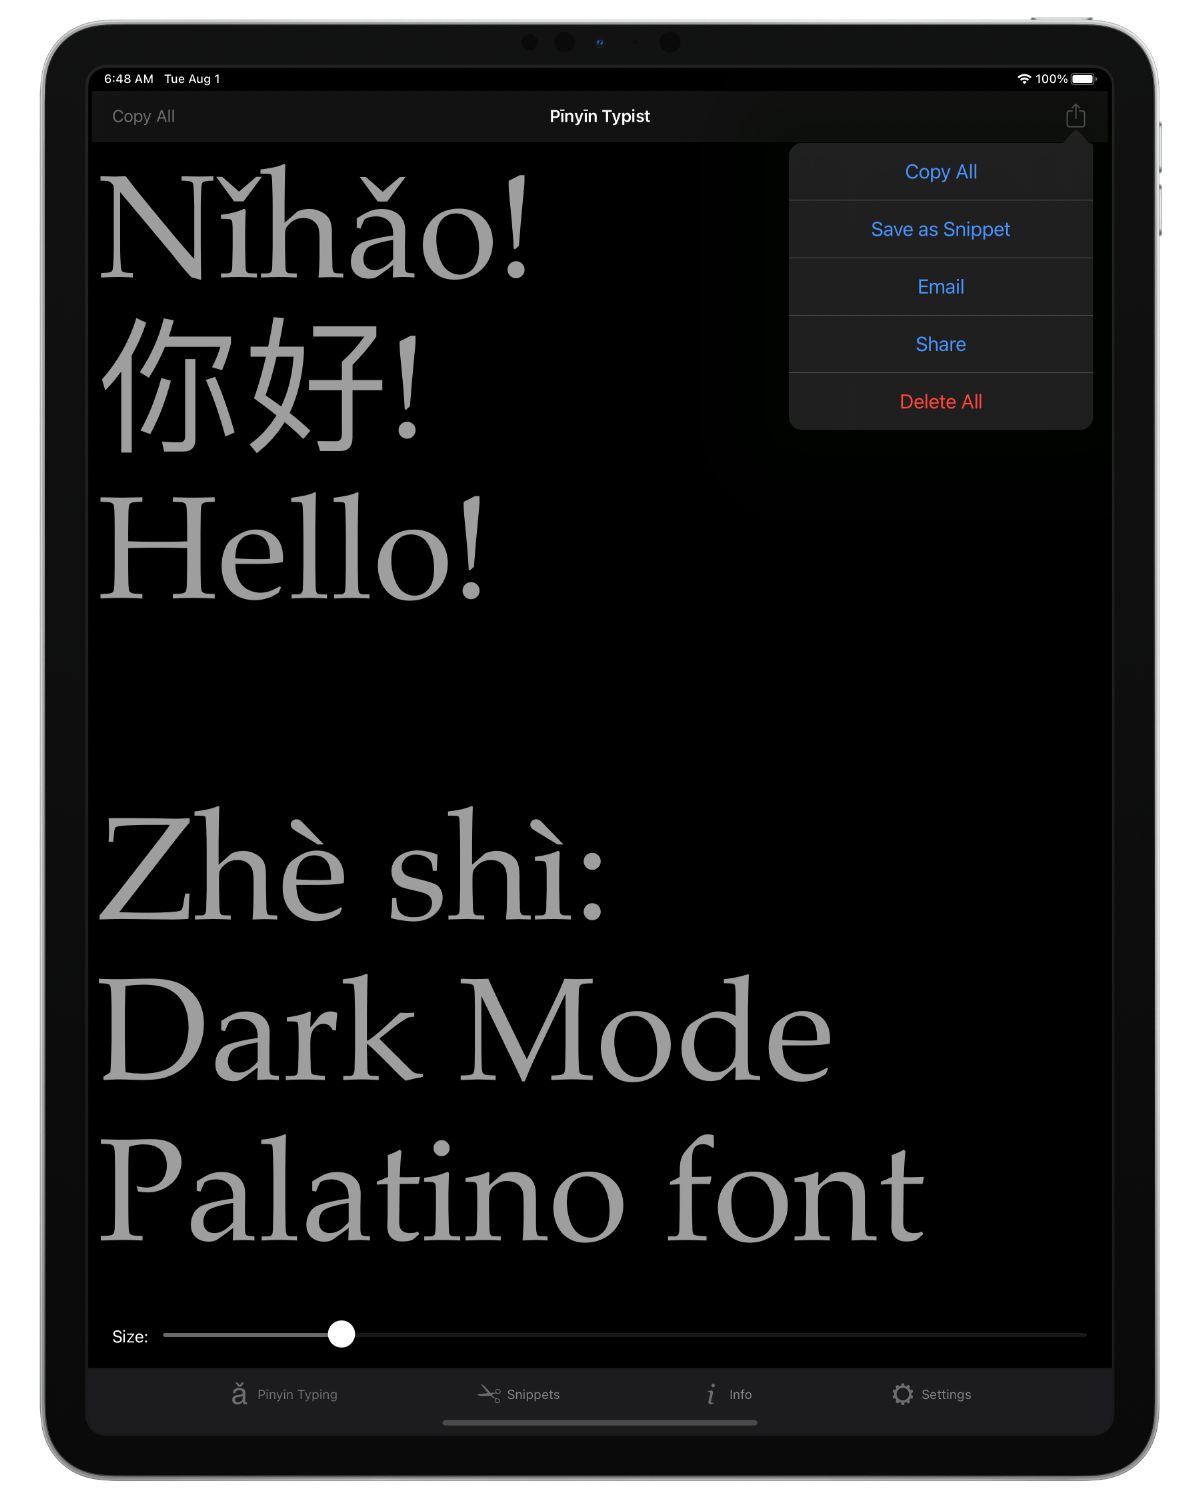 Screenshot: iPad; “Nǐhǎo” in Pīnyīn, characters, and English; Pīnyīn Typing tab view menu; Dark Mode; Palatino font